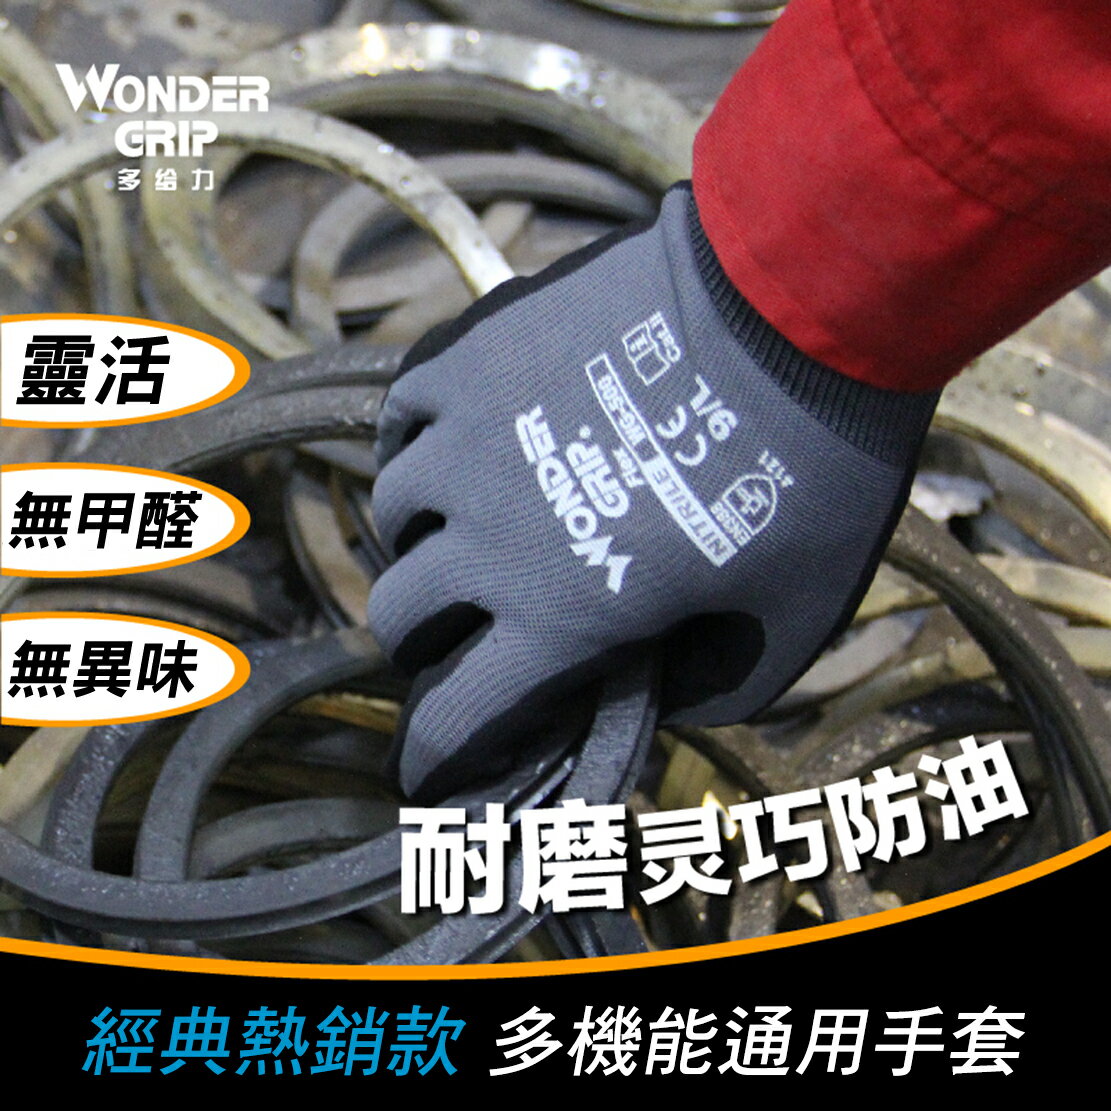 【哇襪手套~現貨】Wonder Grip® 多給力™# WG- 500靈巧型-舒適乳膠通用操作手套